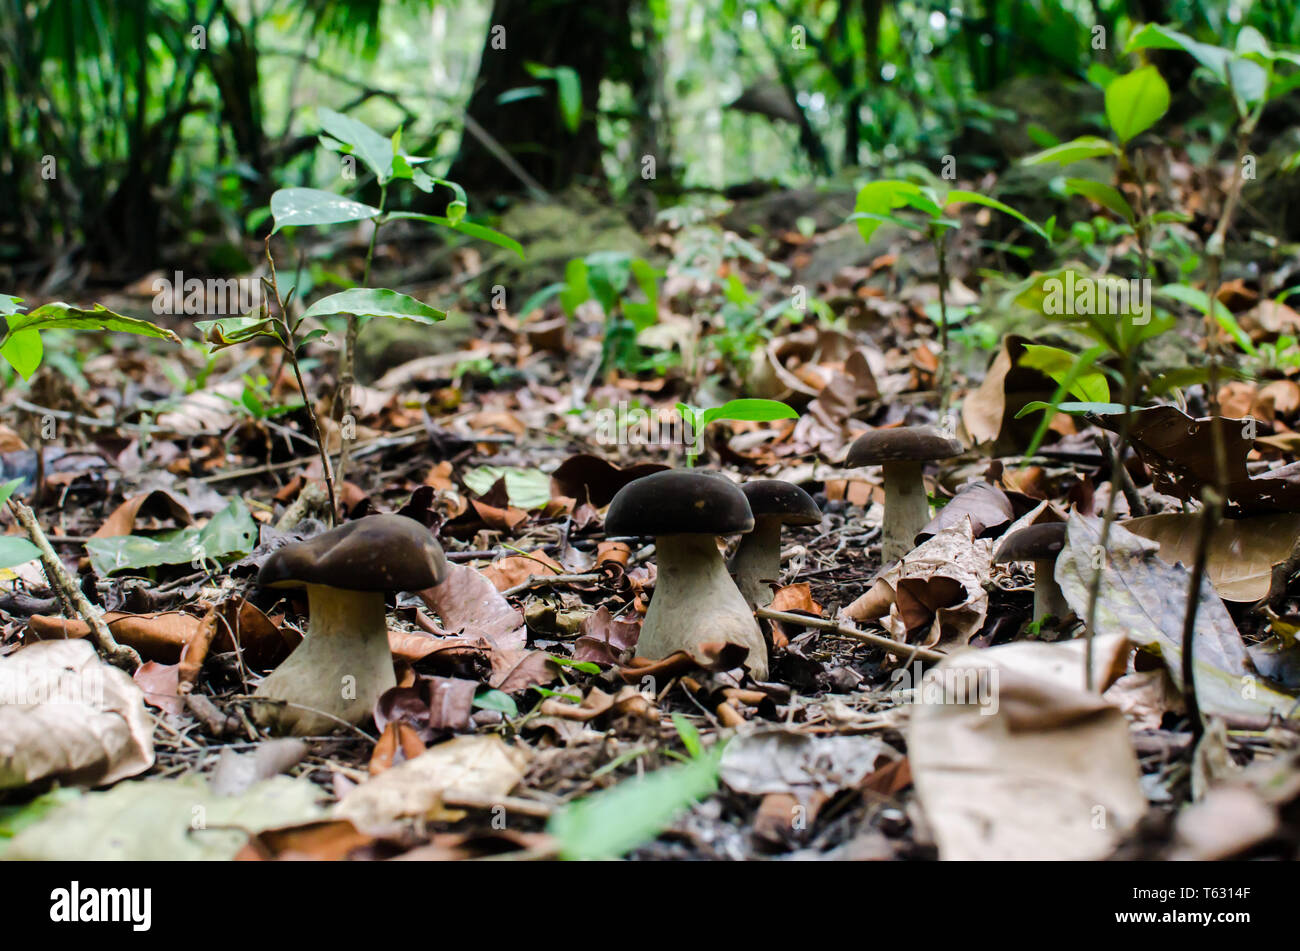 Boletaceae mushrooms in the rainforest floor Stock Photo